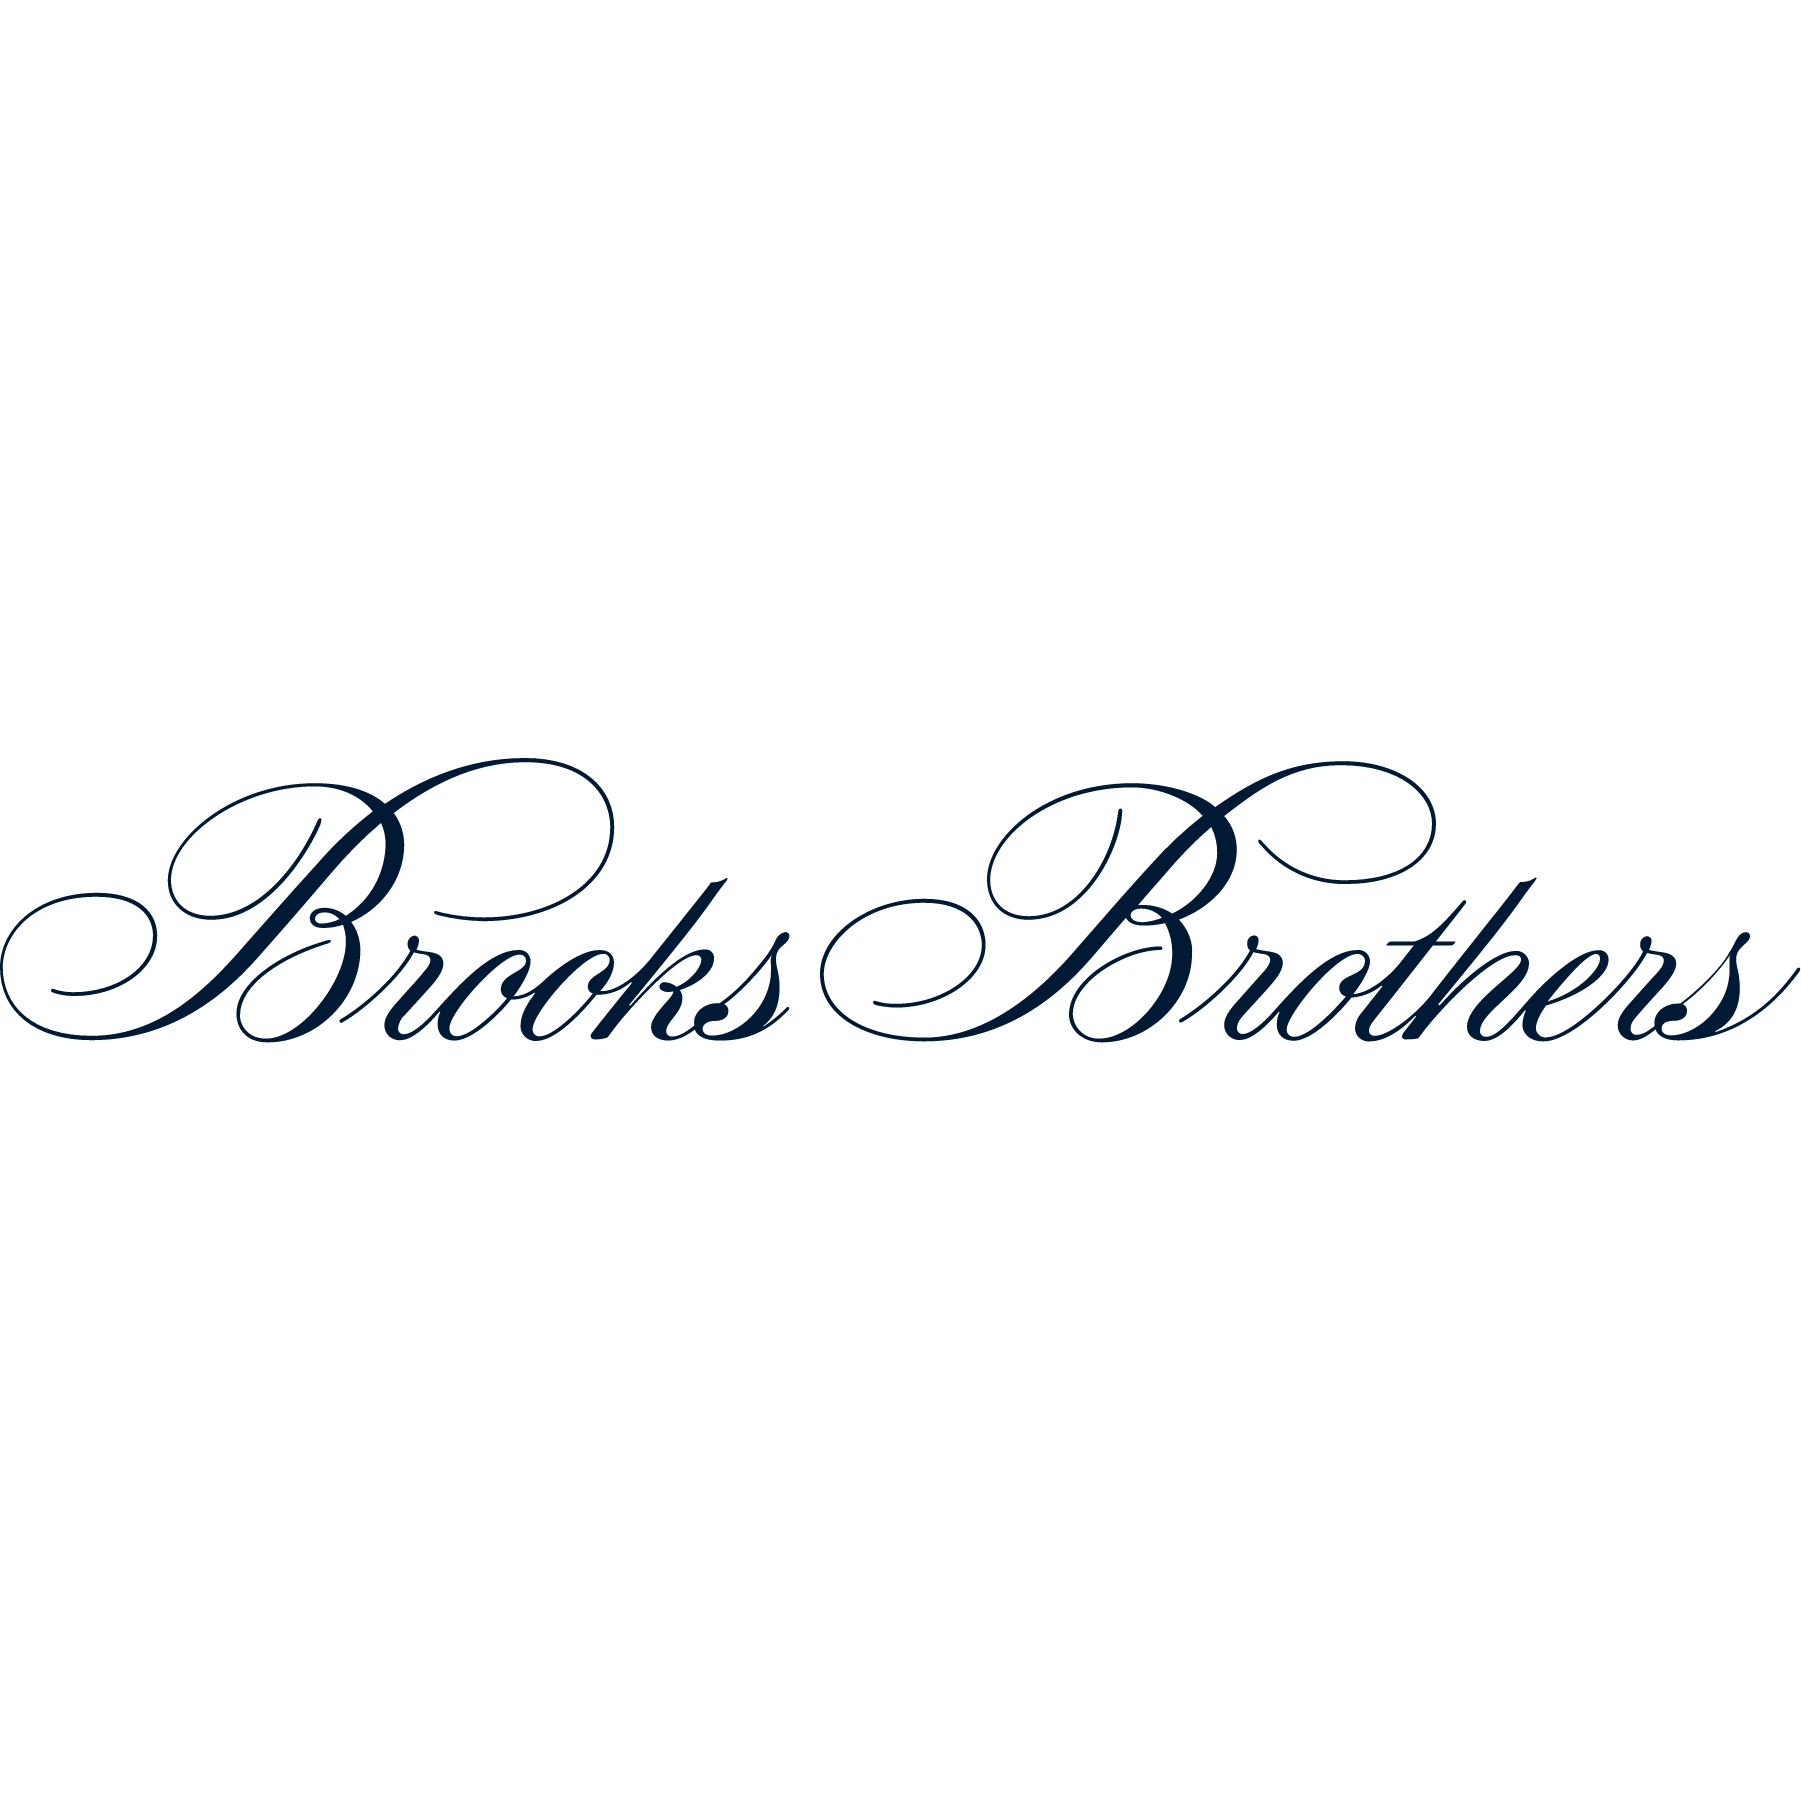 Brooks Brothers - Mebane, NC - Nextdoor